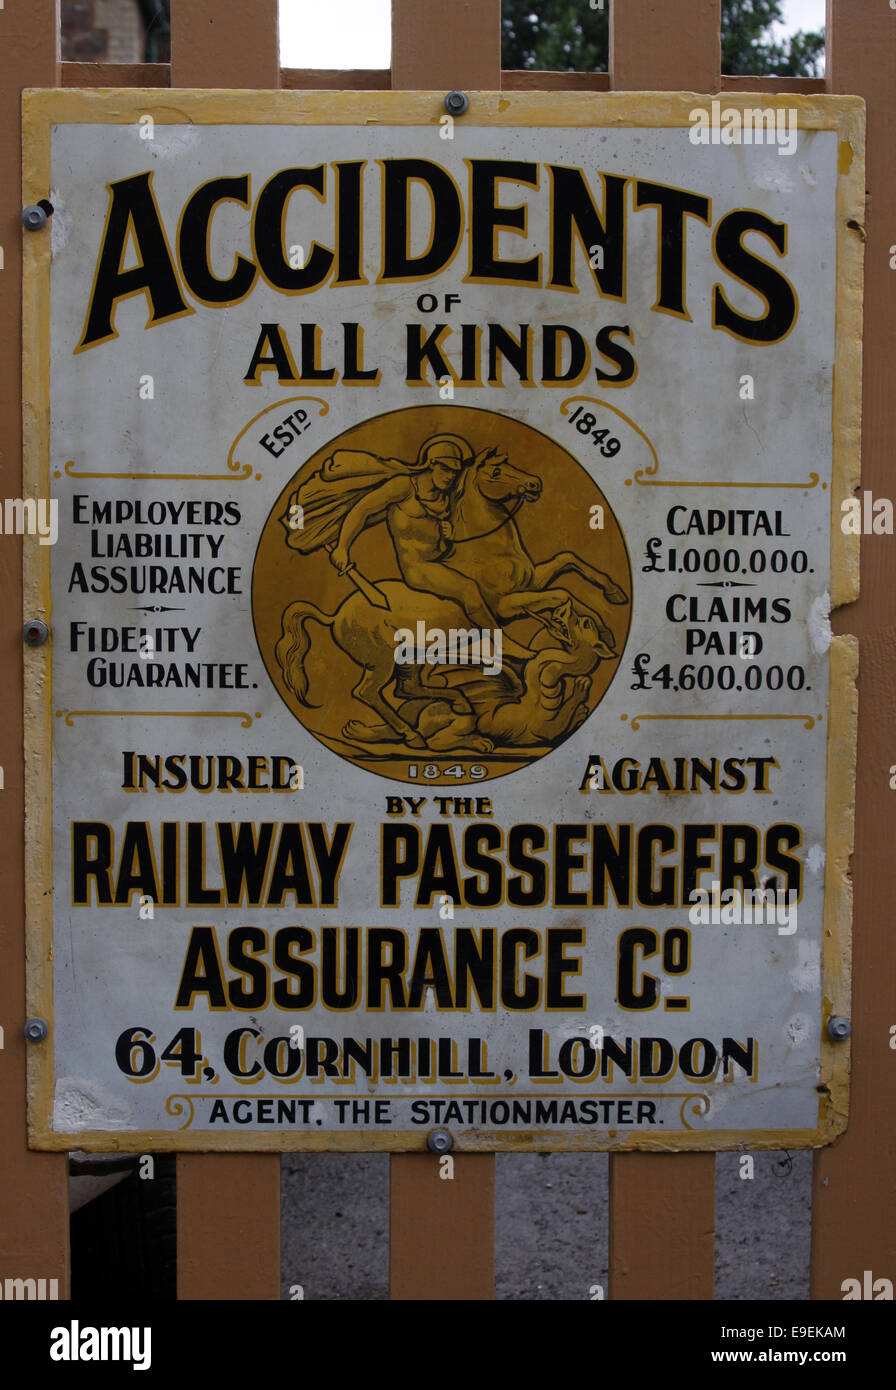 Les passagers de chemin de fer Vintage enseigne publicitaire d'assurance Banque D'Images